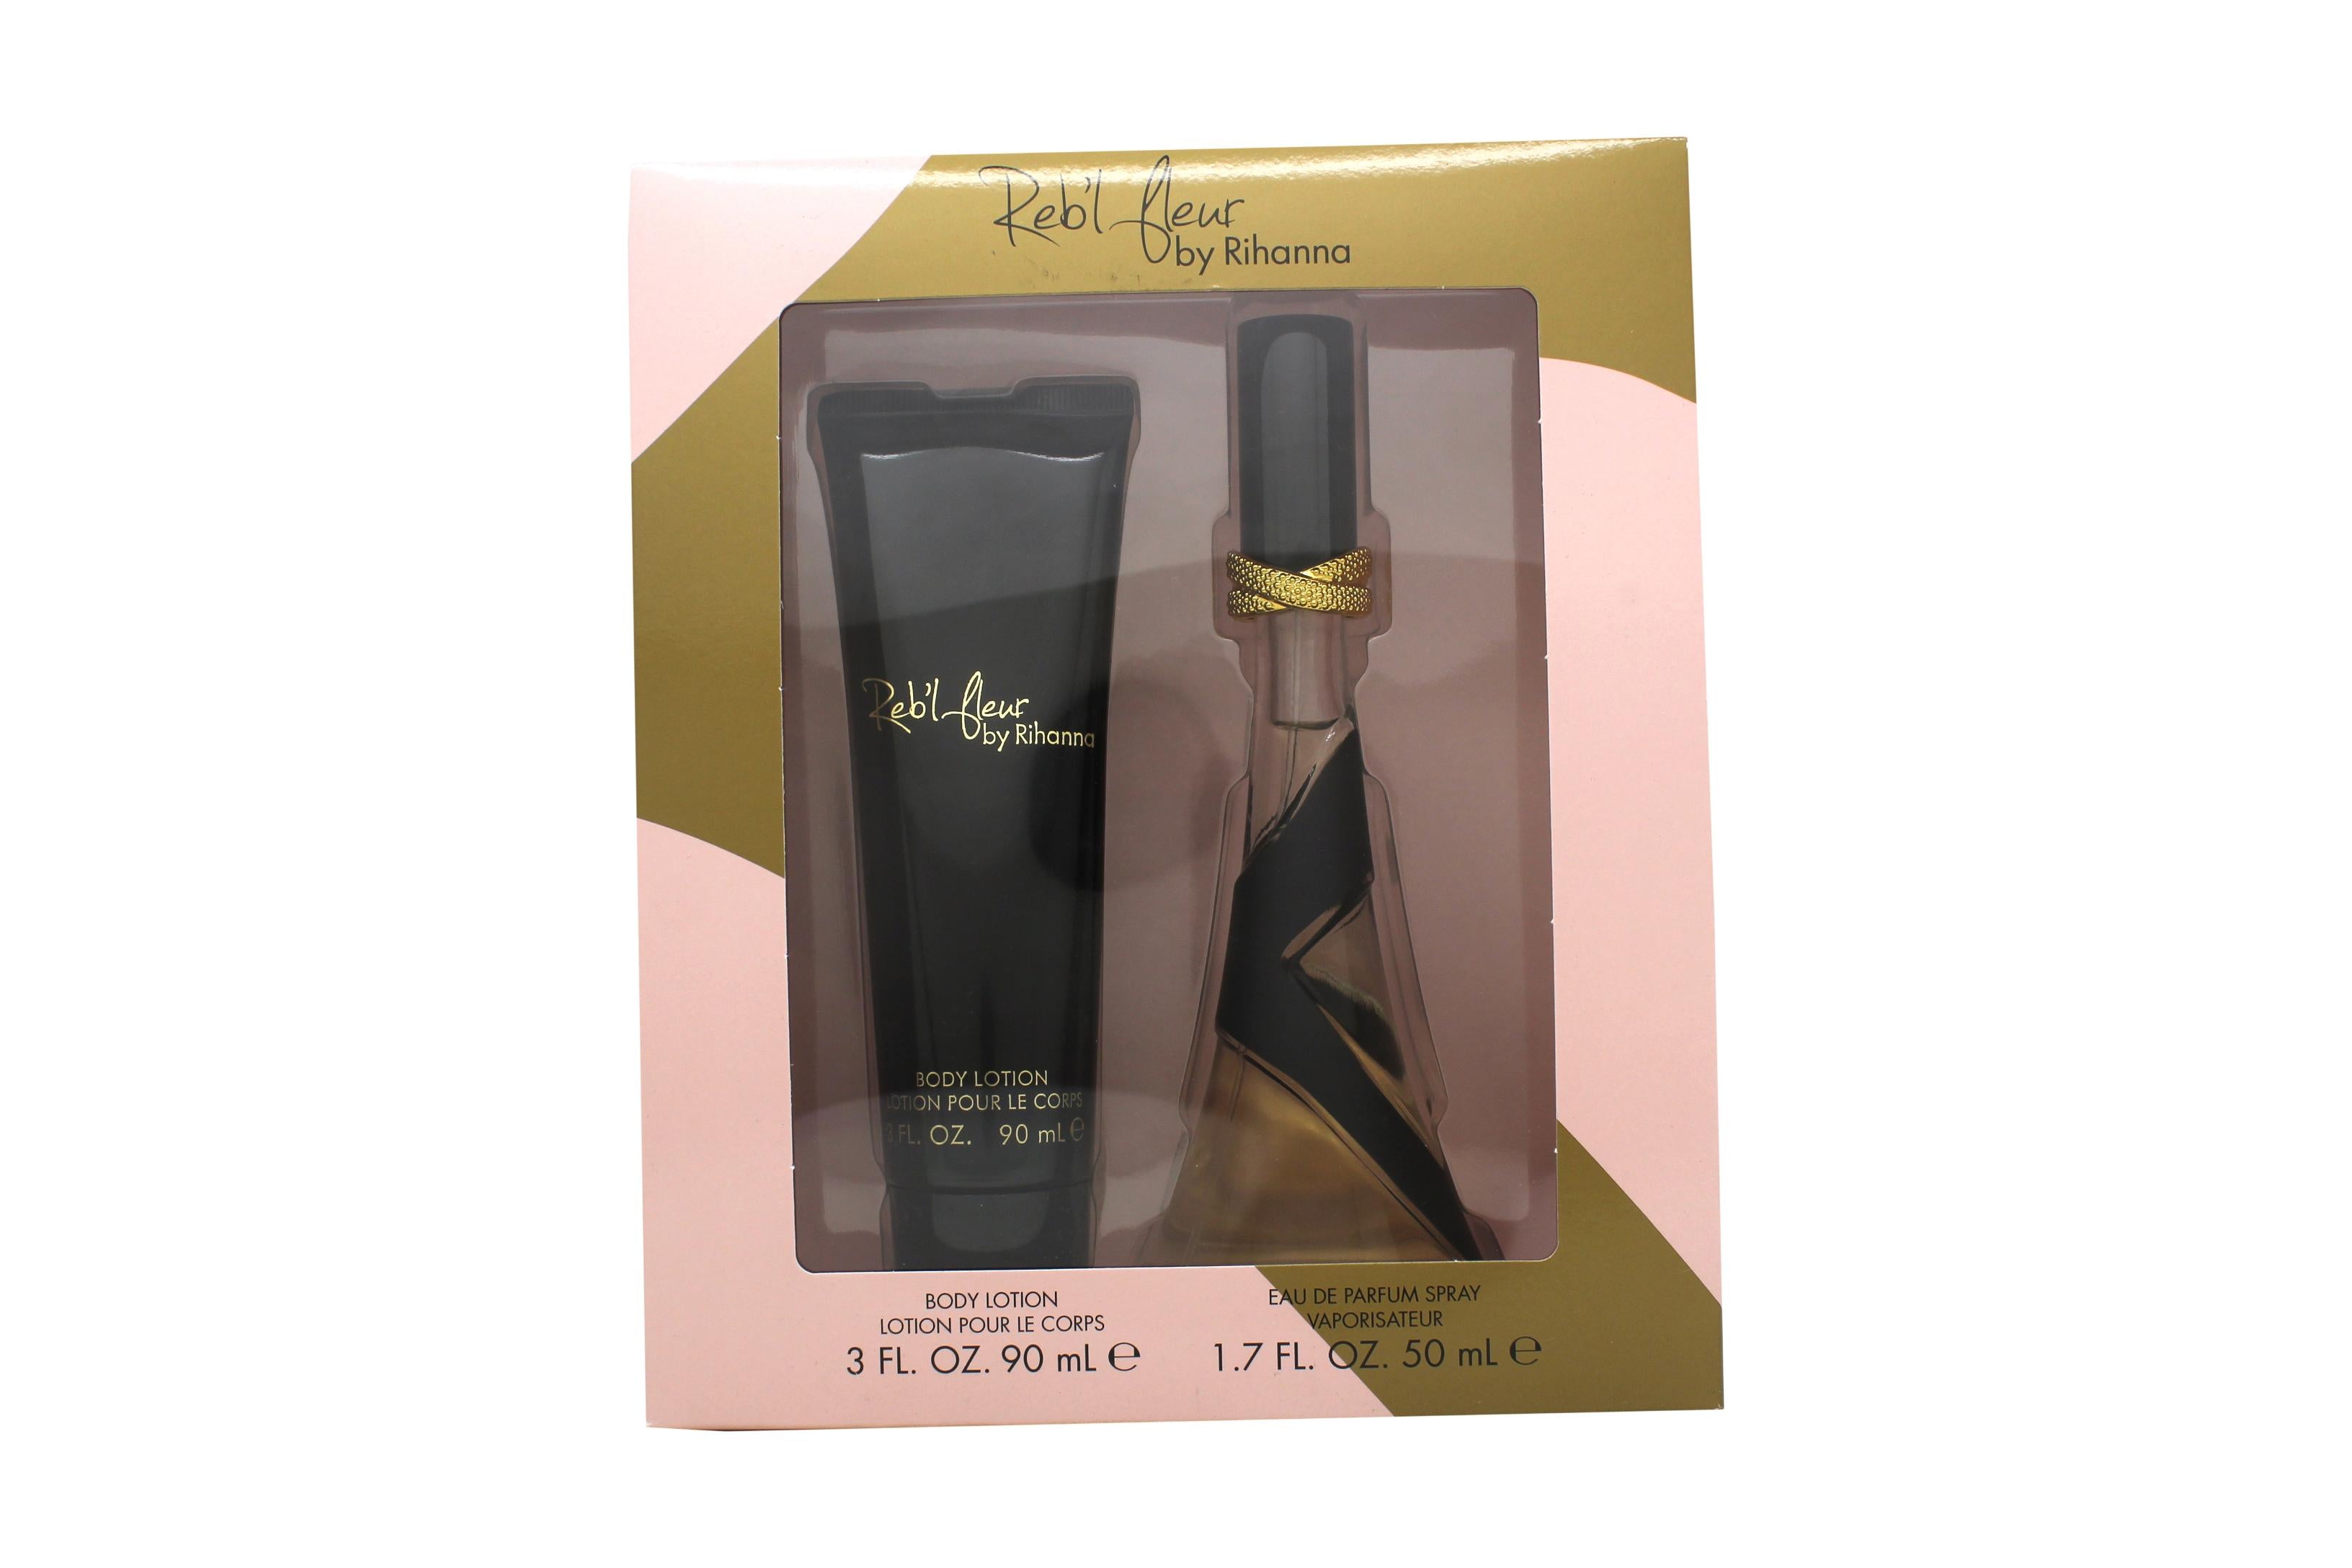 View Rihanna Rebl Fleur Gift Set 50ml Eau De Parfum Spray 90ml Body Lotion information